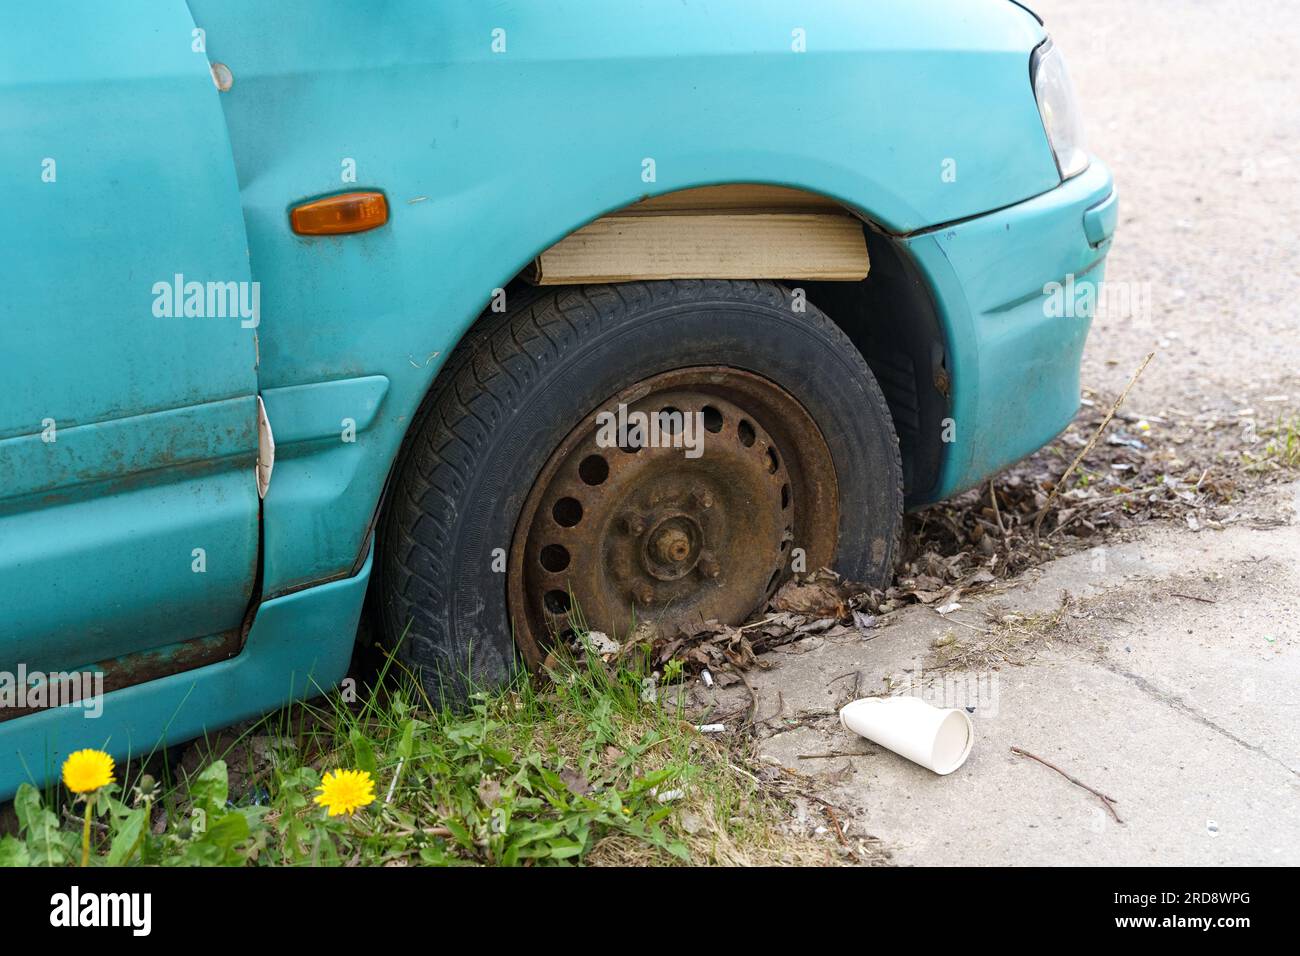 Il y a une vieille voiture bleue inutilisée avec un pneu crevé dans la rue. Gros plan. Banque D'Images